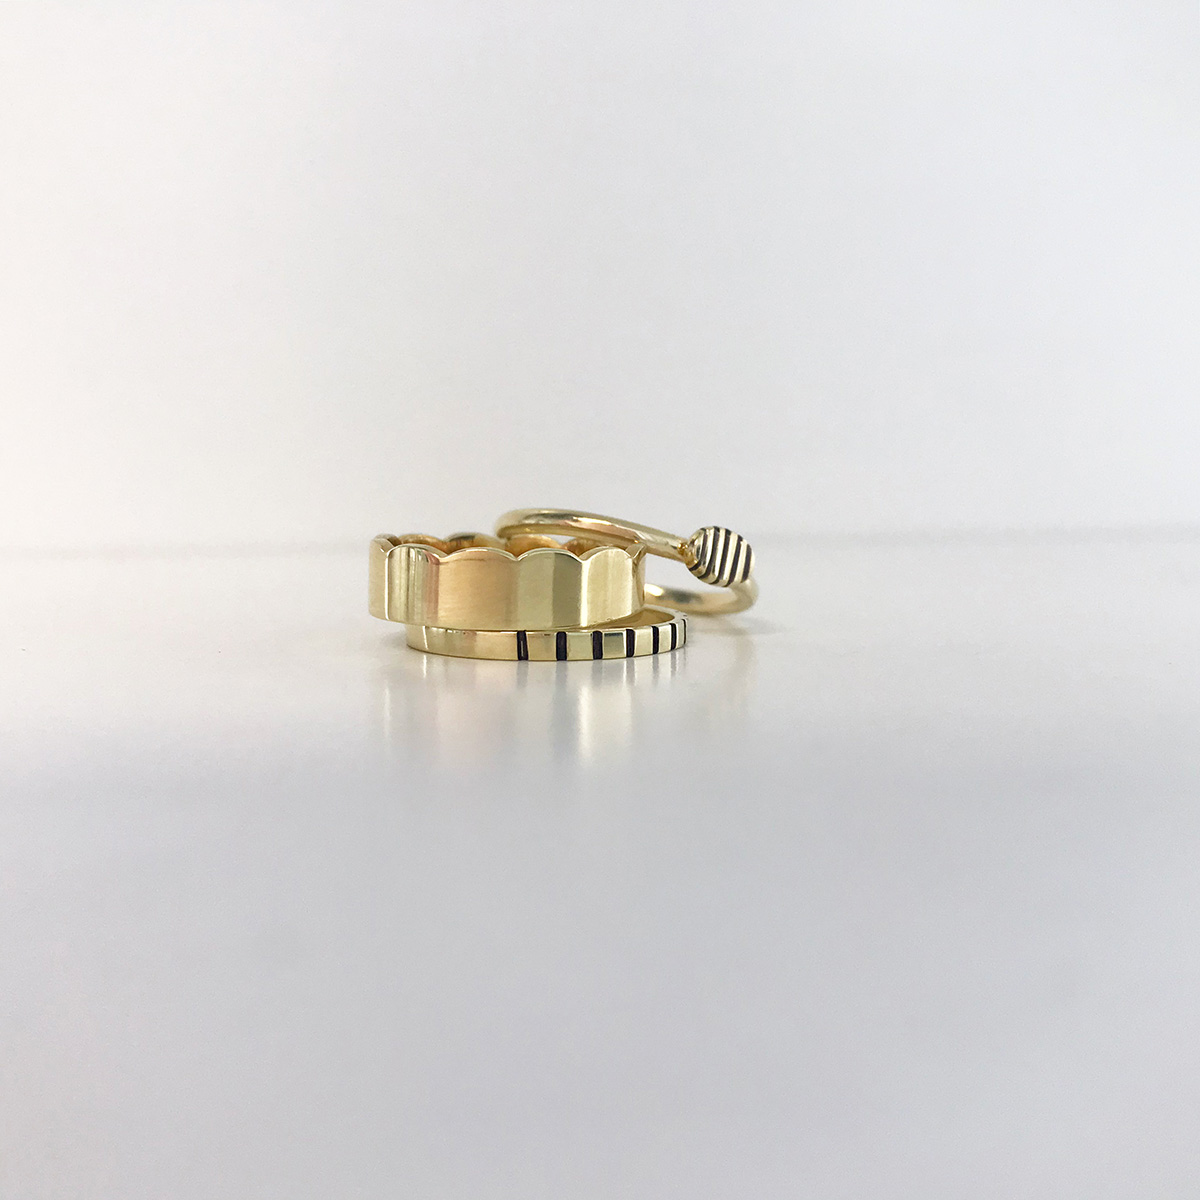 prsteň Pásavec, obrúčka Vlnka, prsteň Mandelinka, žlté zlato 585/1000, čierne rhodium, 2021, montovaný šperk